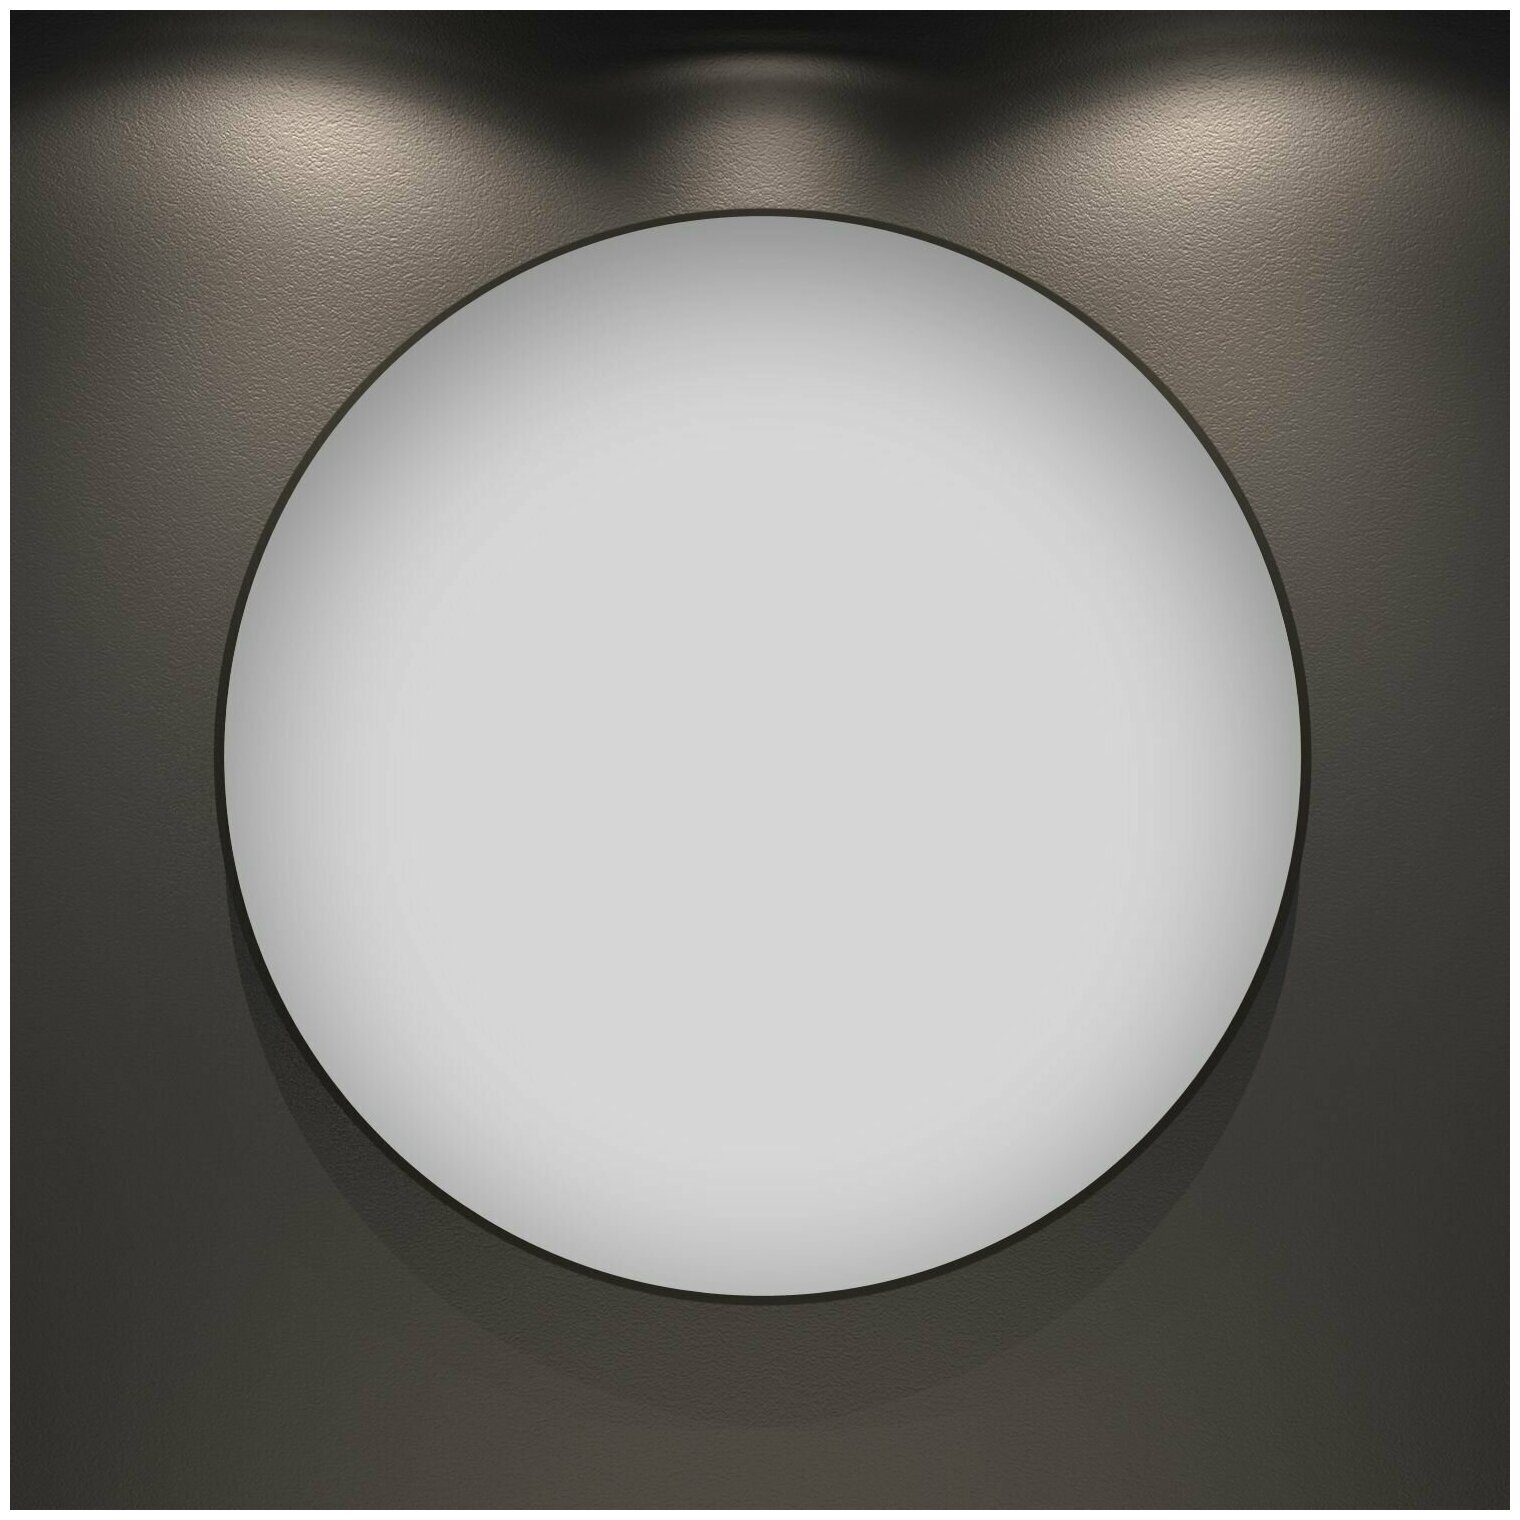 Настенное зеркало в ванную Wellsee 7 Rays' Spectrum 172200090 : влагостойкое большое зеркало 100 см с черным матовым контуром